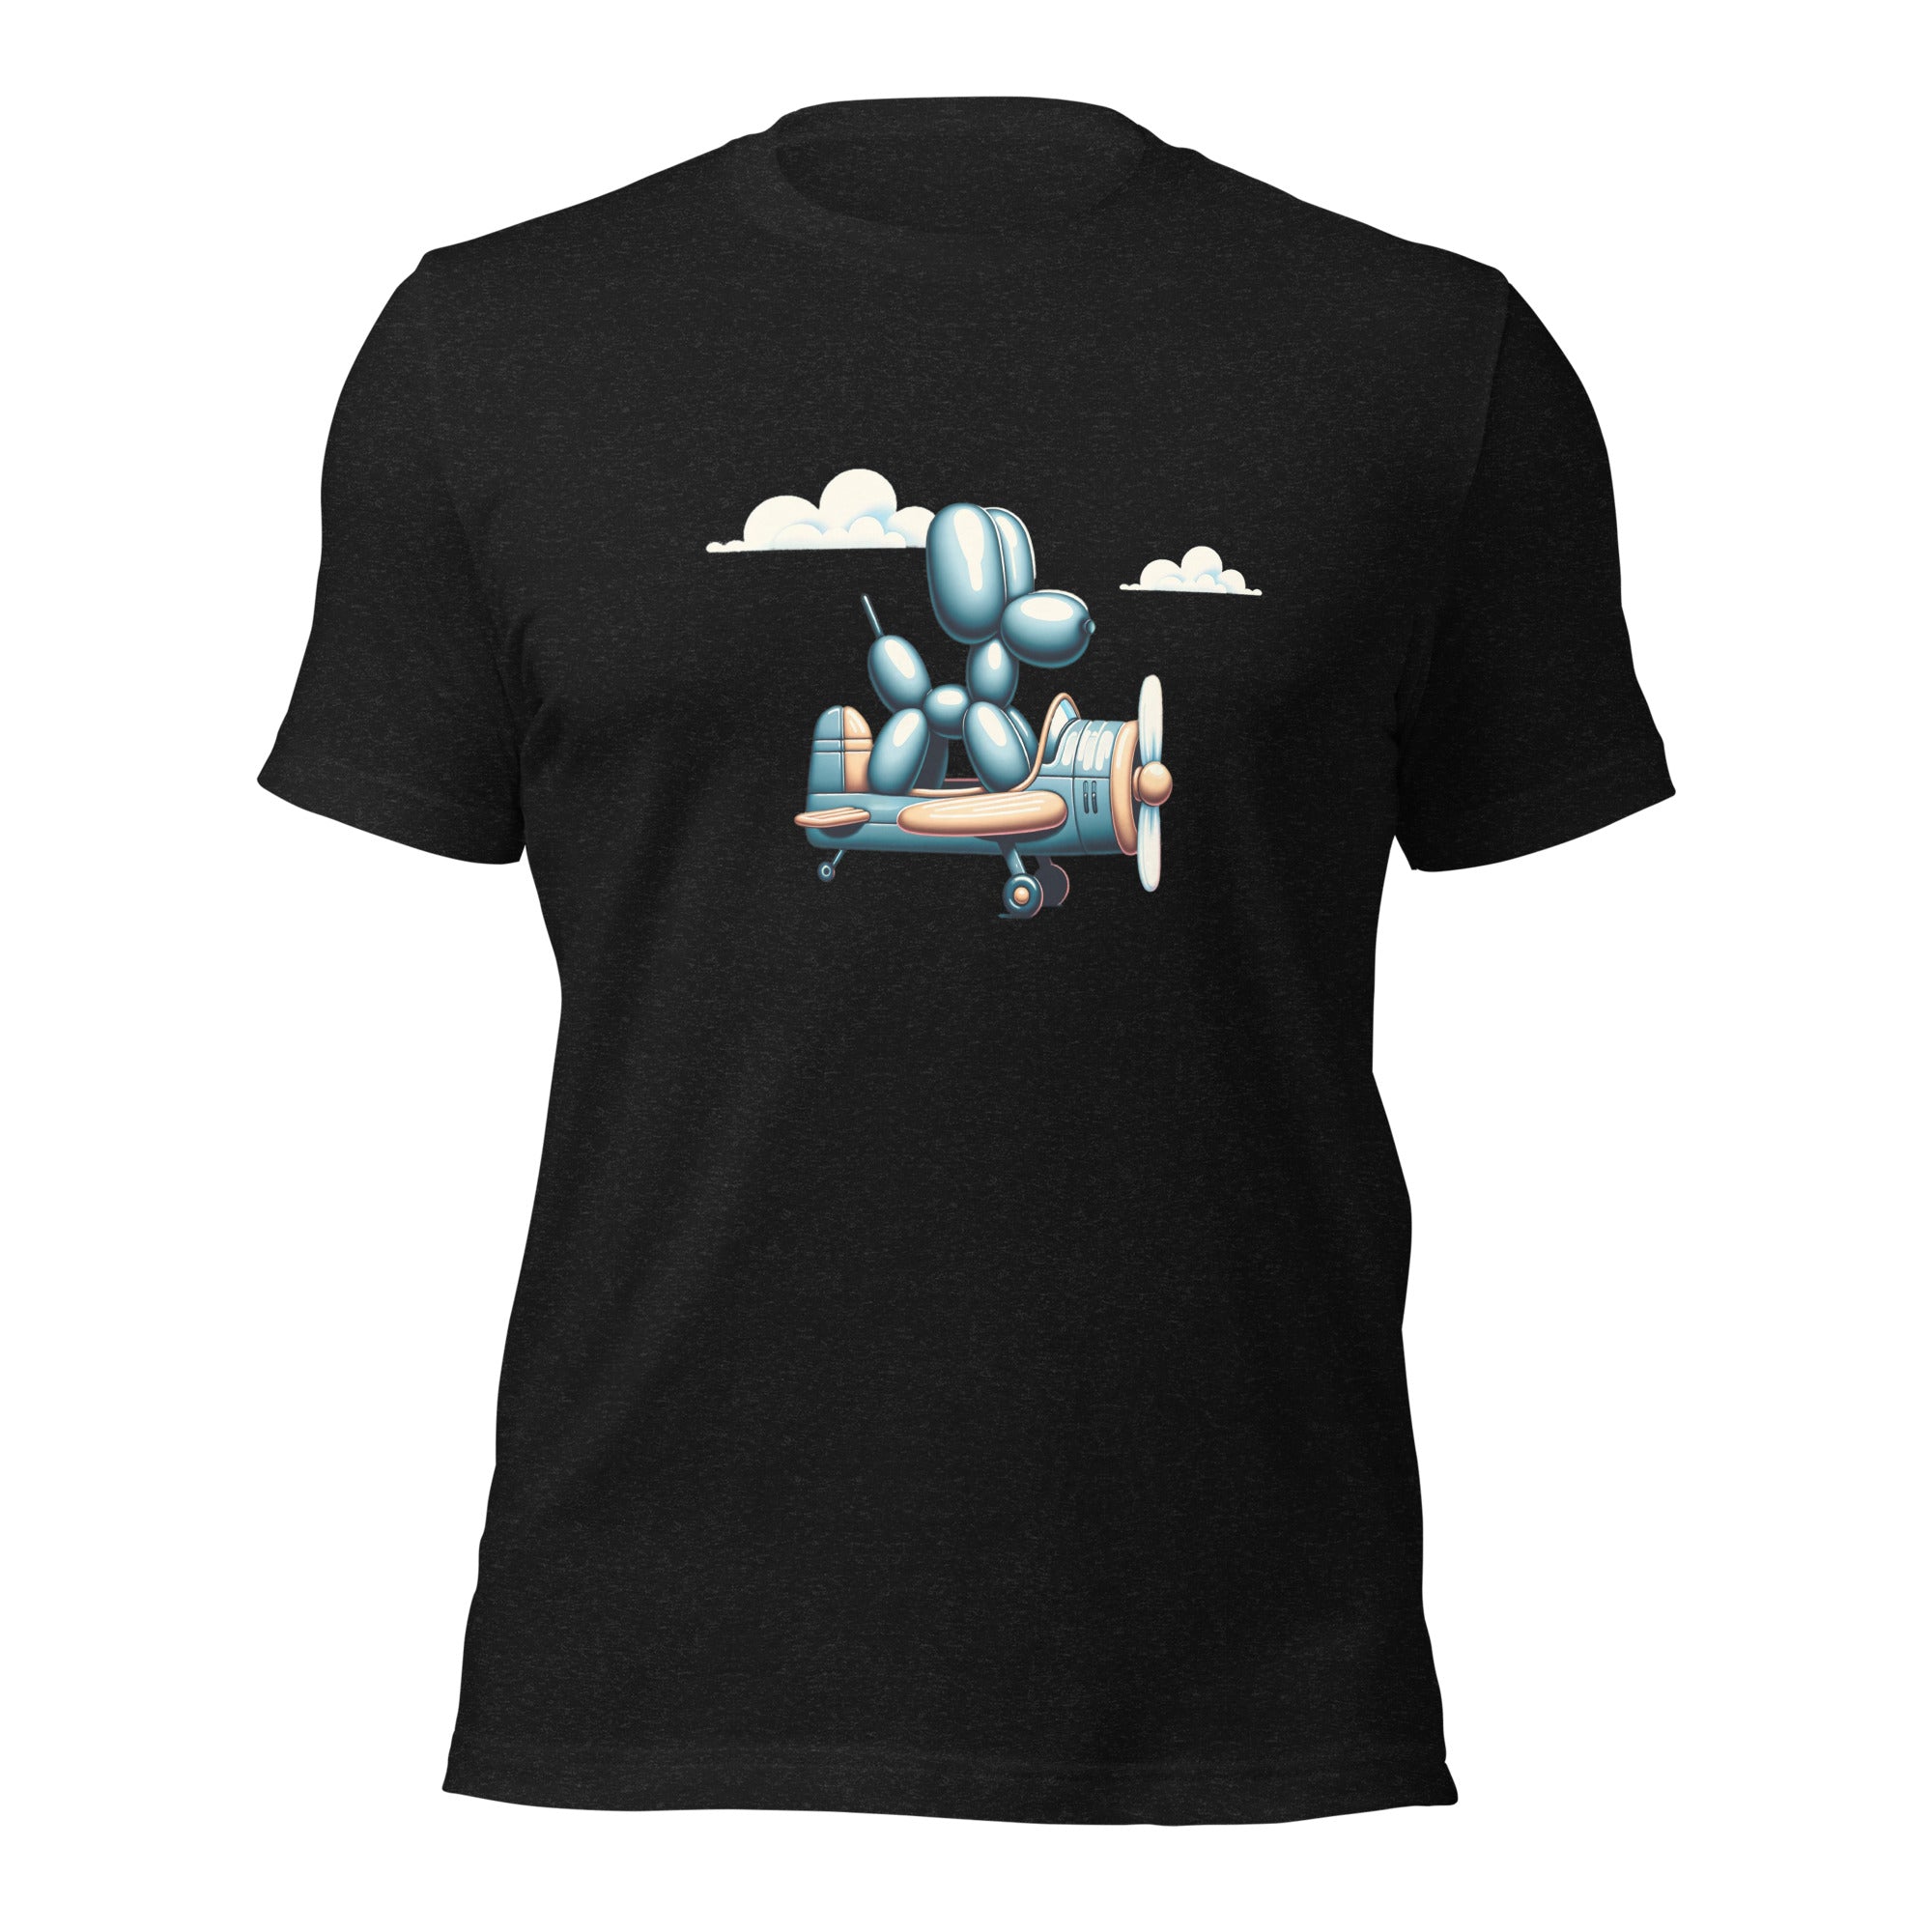 Skyward Sculptor Adventure Tee, Unisex T-shirt